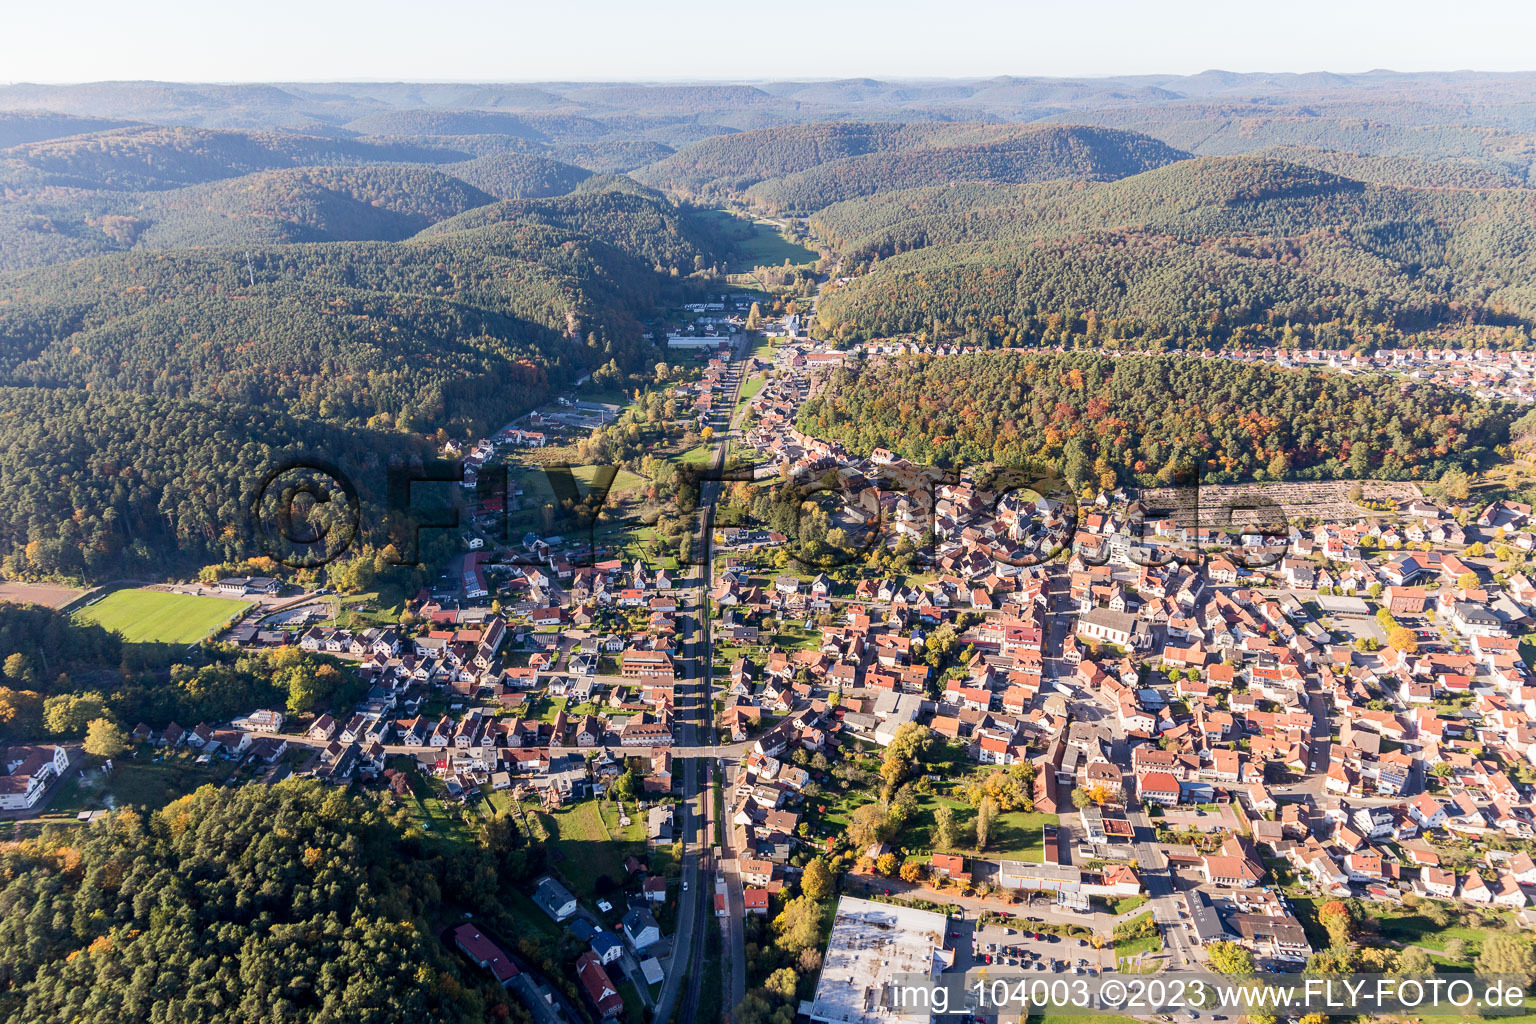 Dahn im Bundesland Rheinland-Pfalz, Deutschland von der Drohne aus gesehen